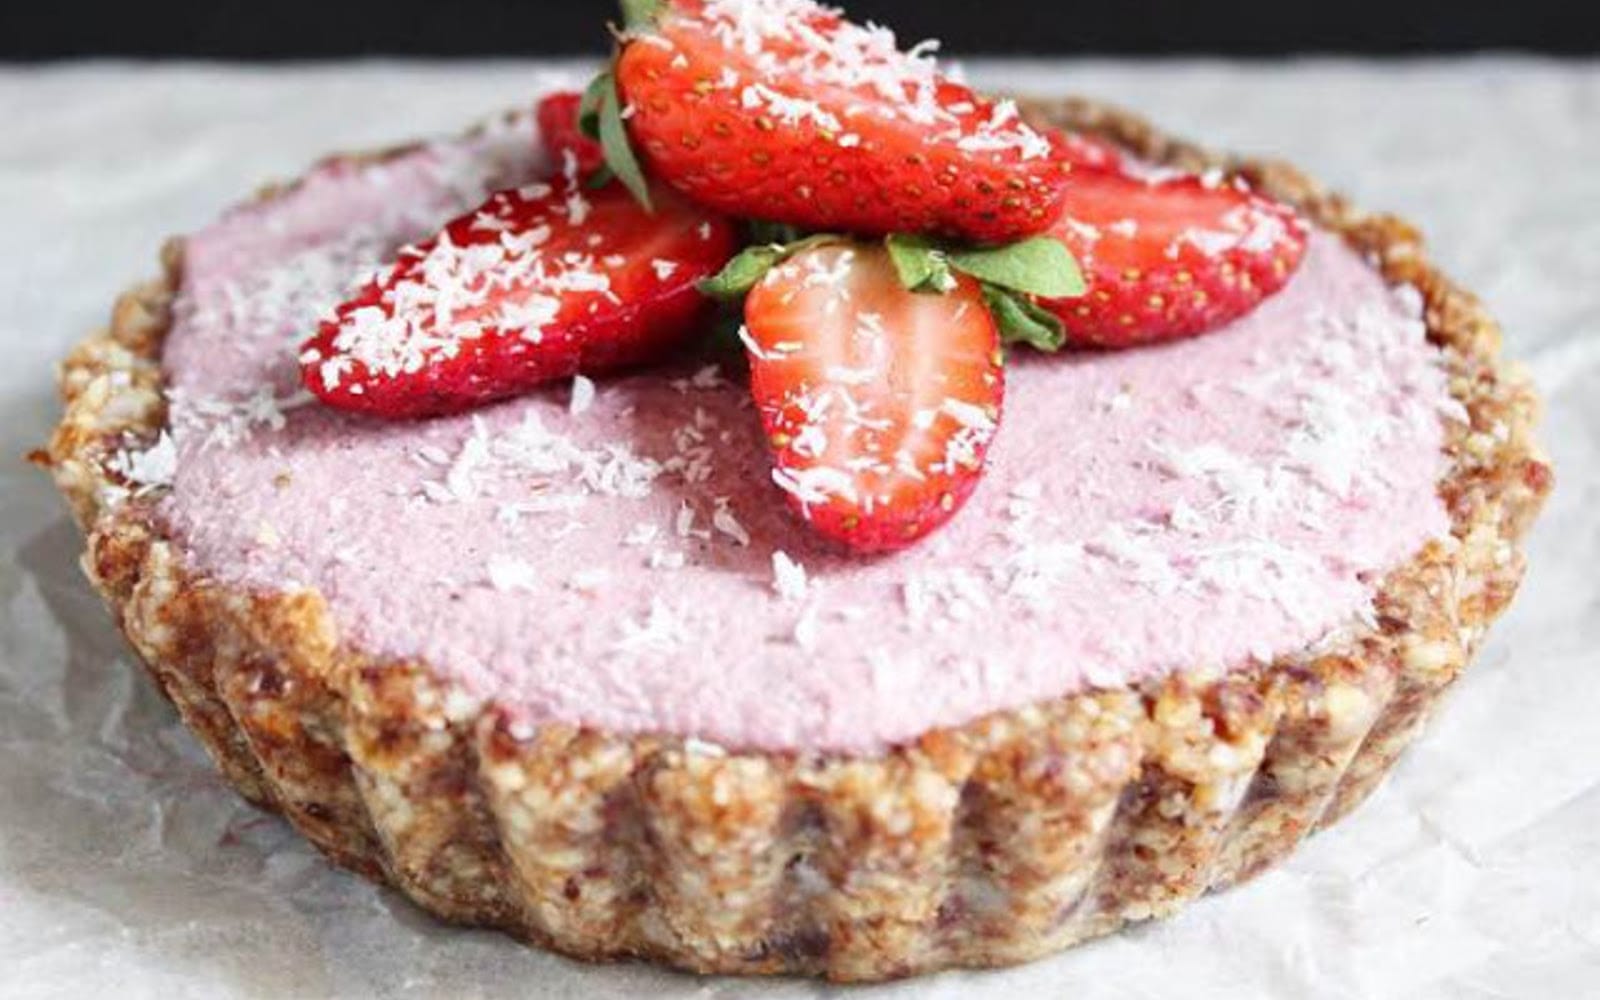 Strawberry Cashew Cream Tart